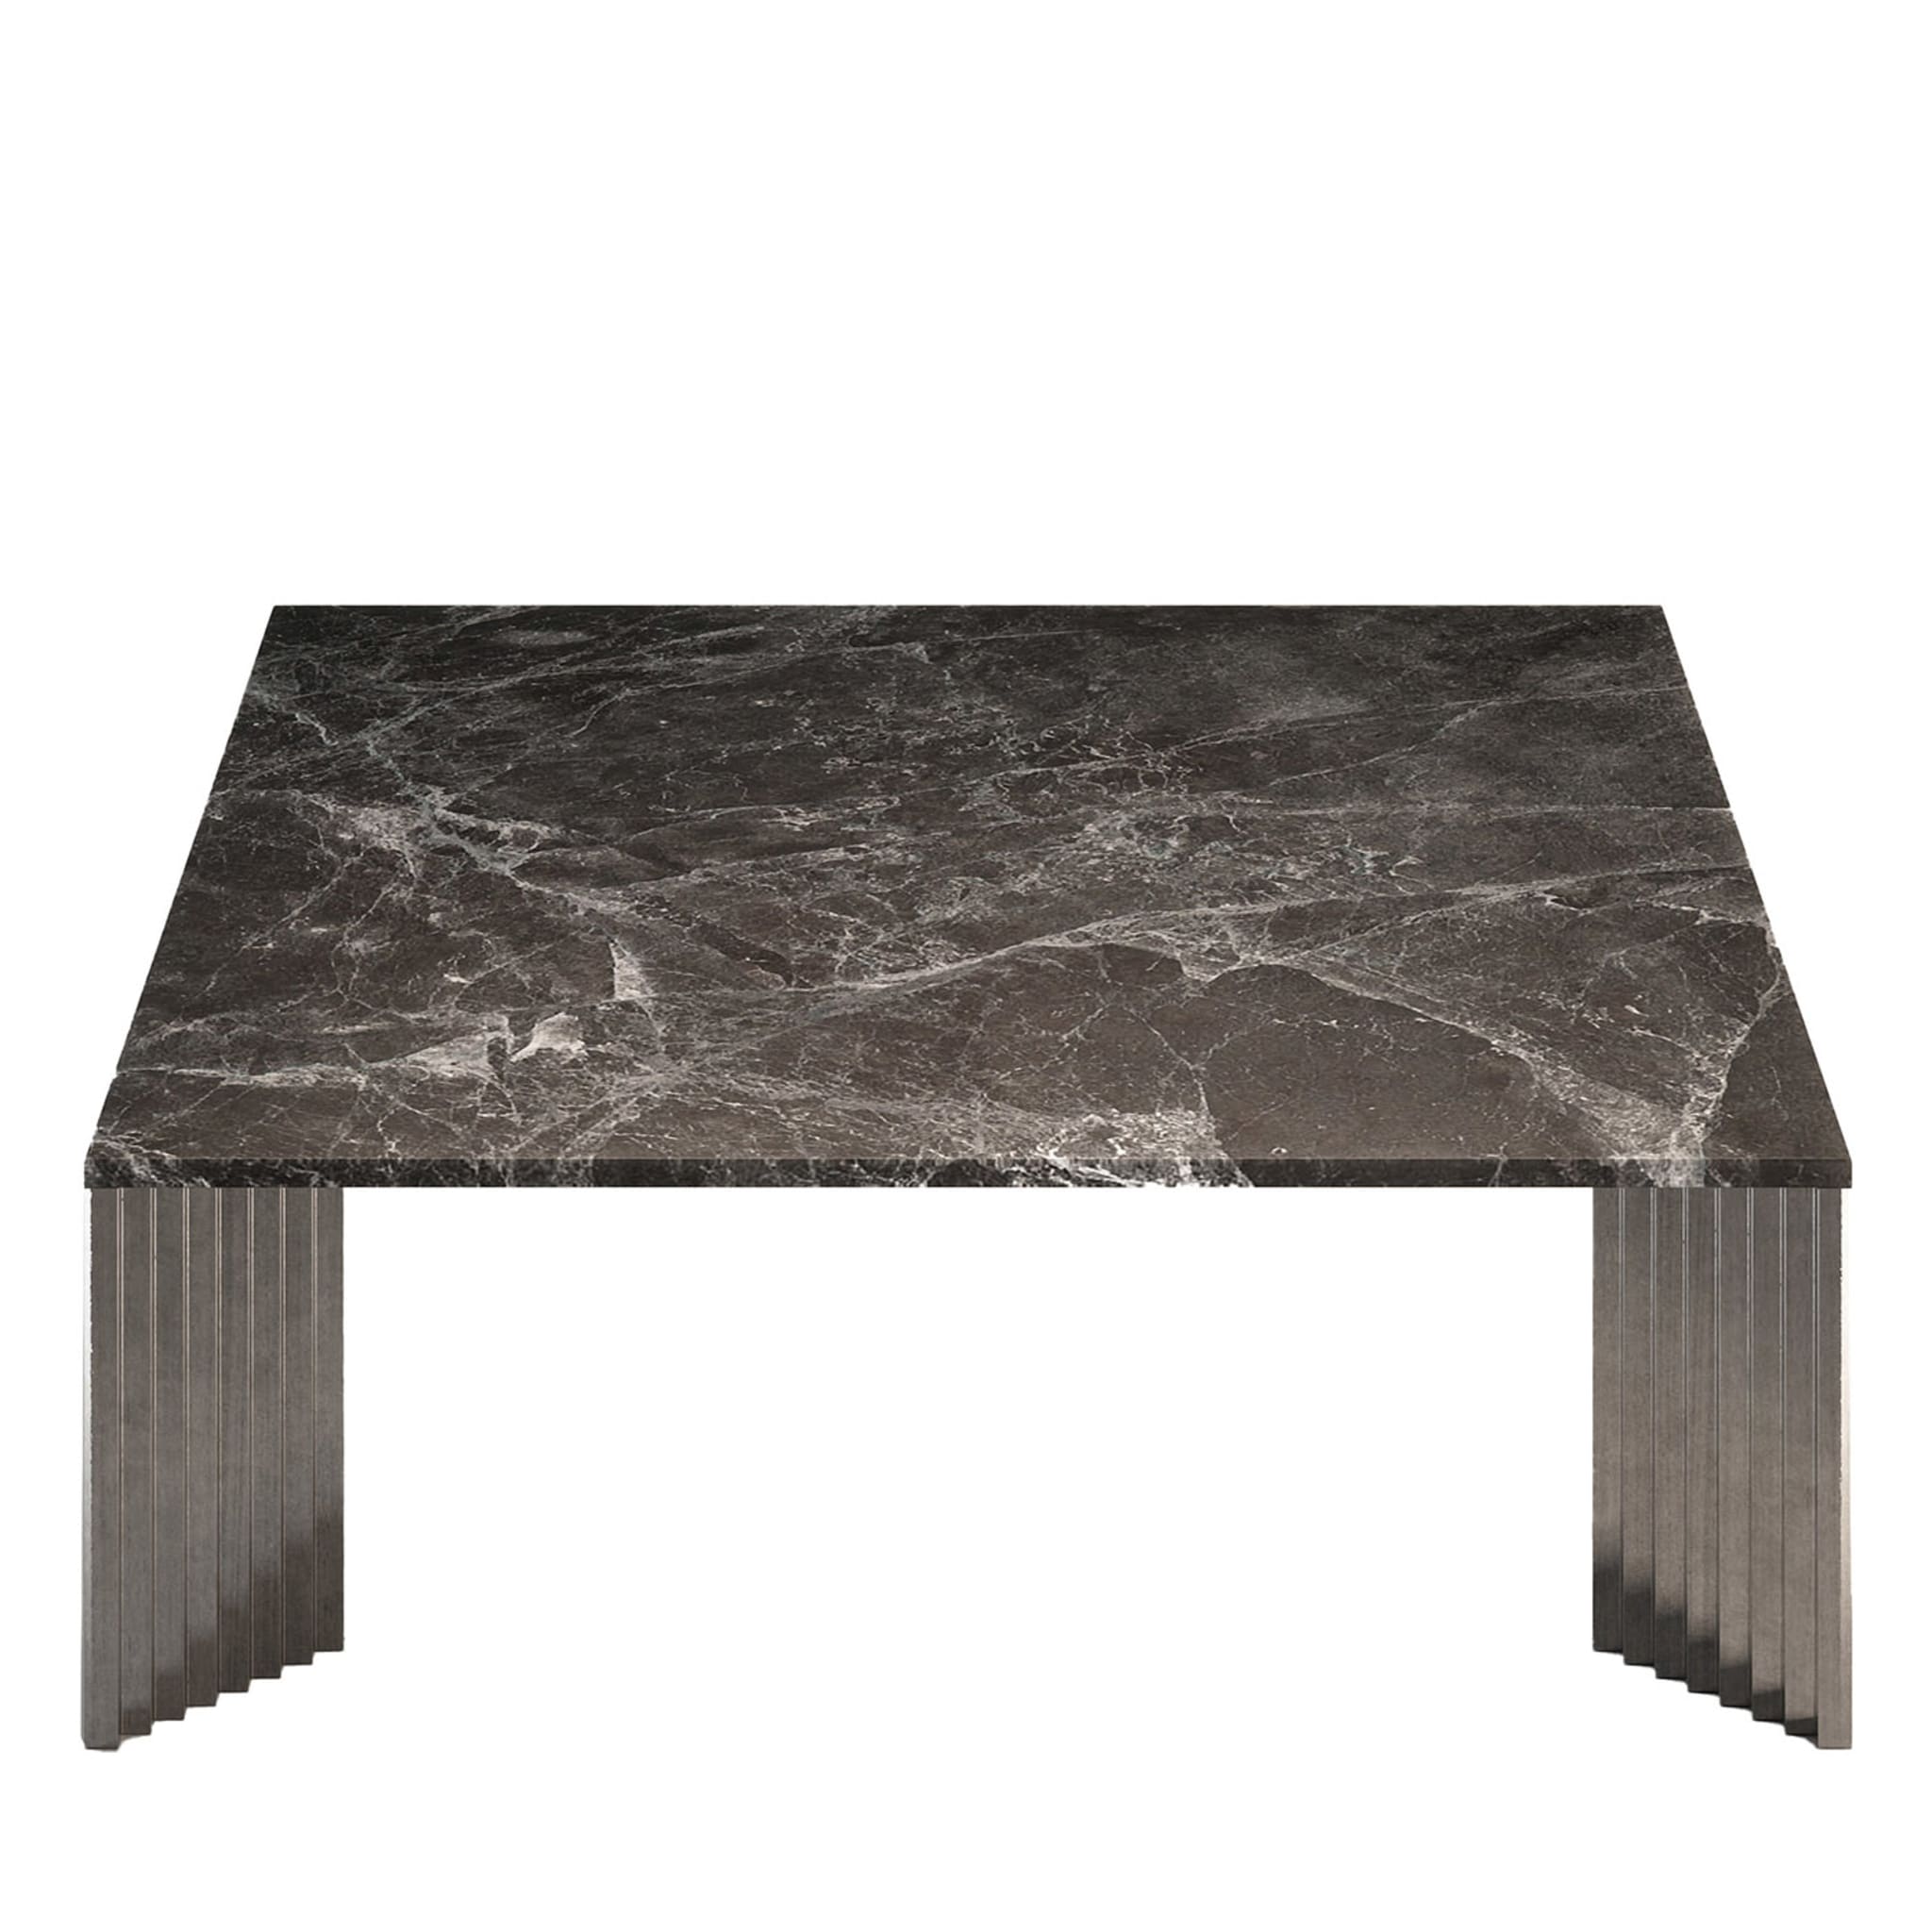 Piero Emperador Gray Marble Top Coffee Table - Alternative view 1